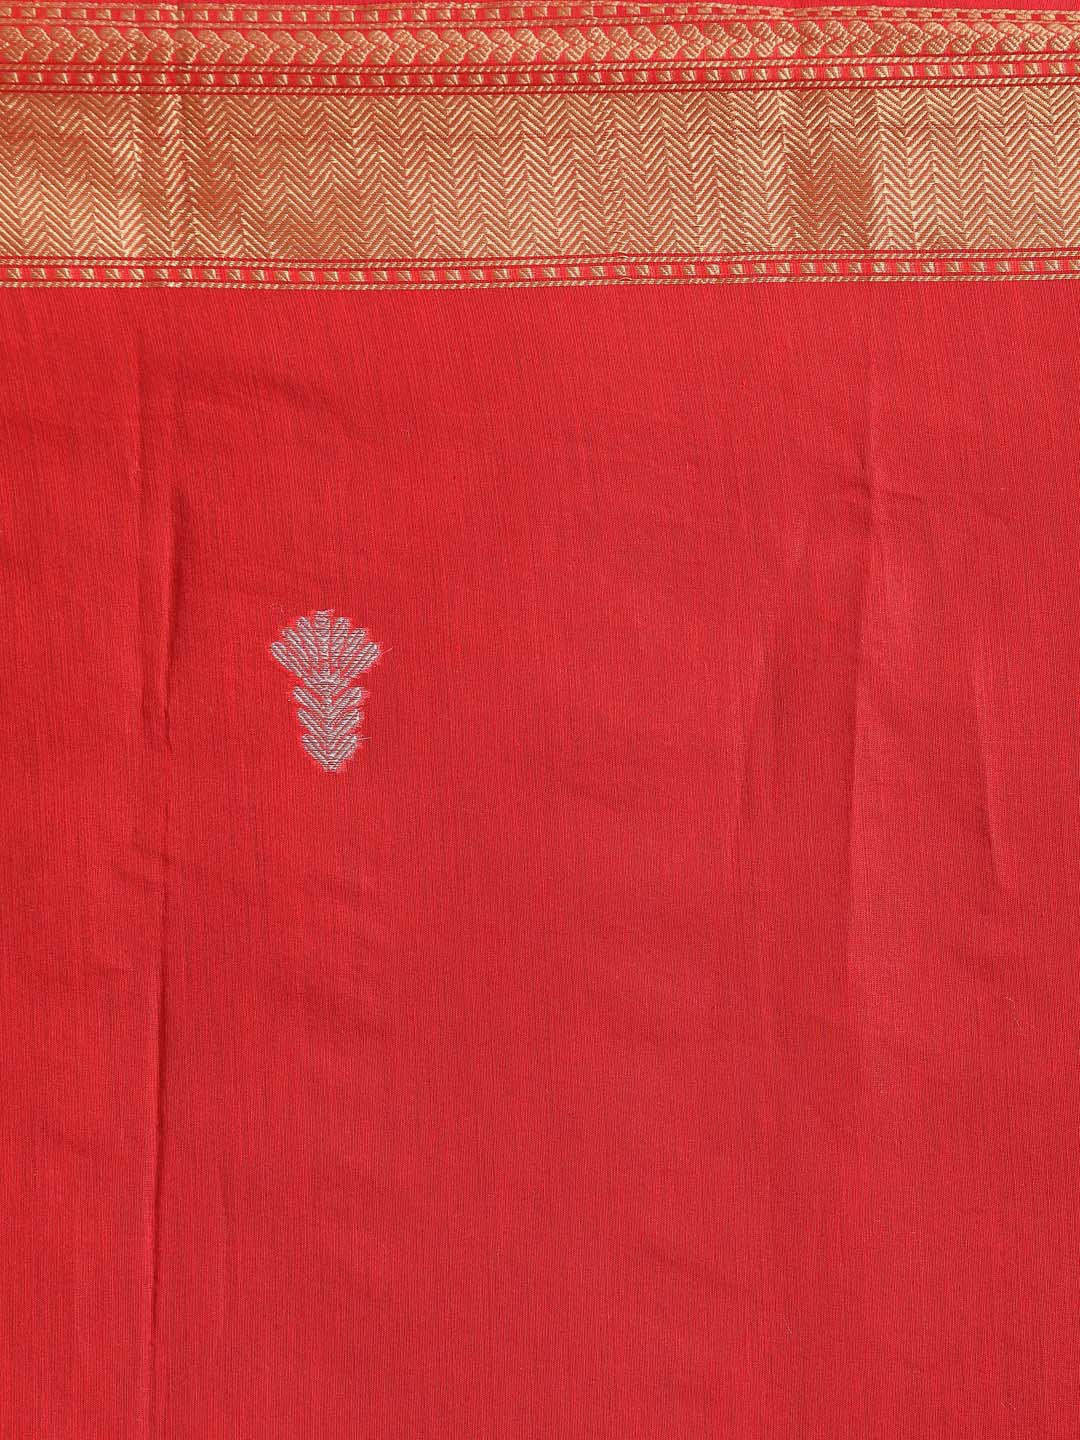 Indethnic Banarasi Red Woven Design Daily Wear Saree - Saree Detail View